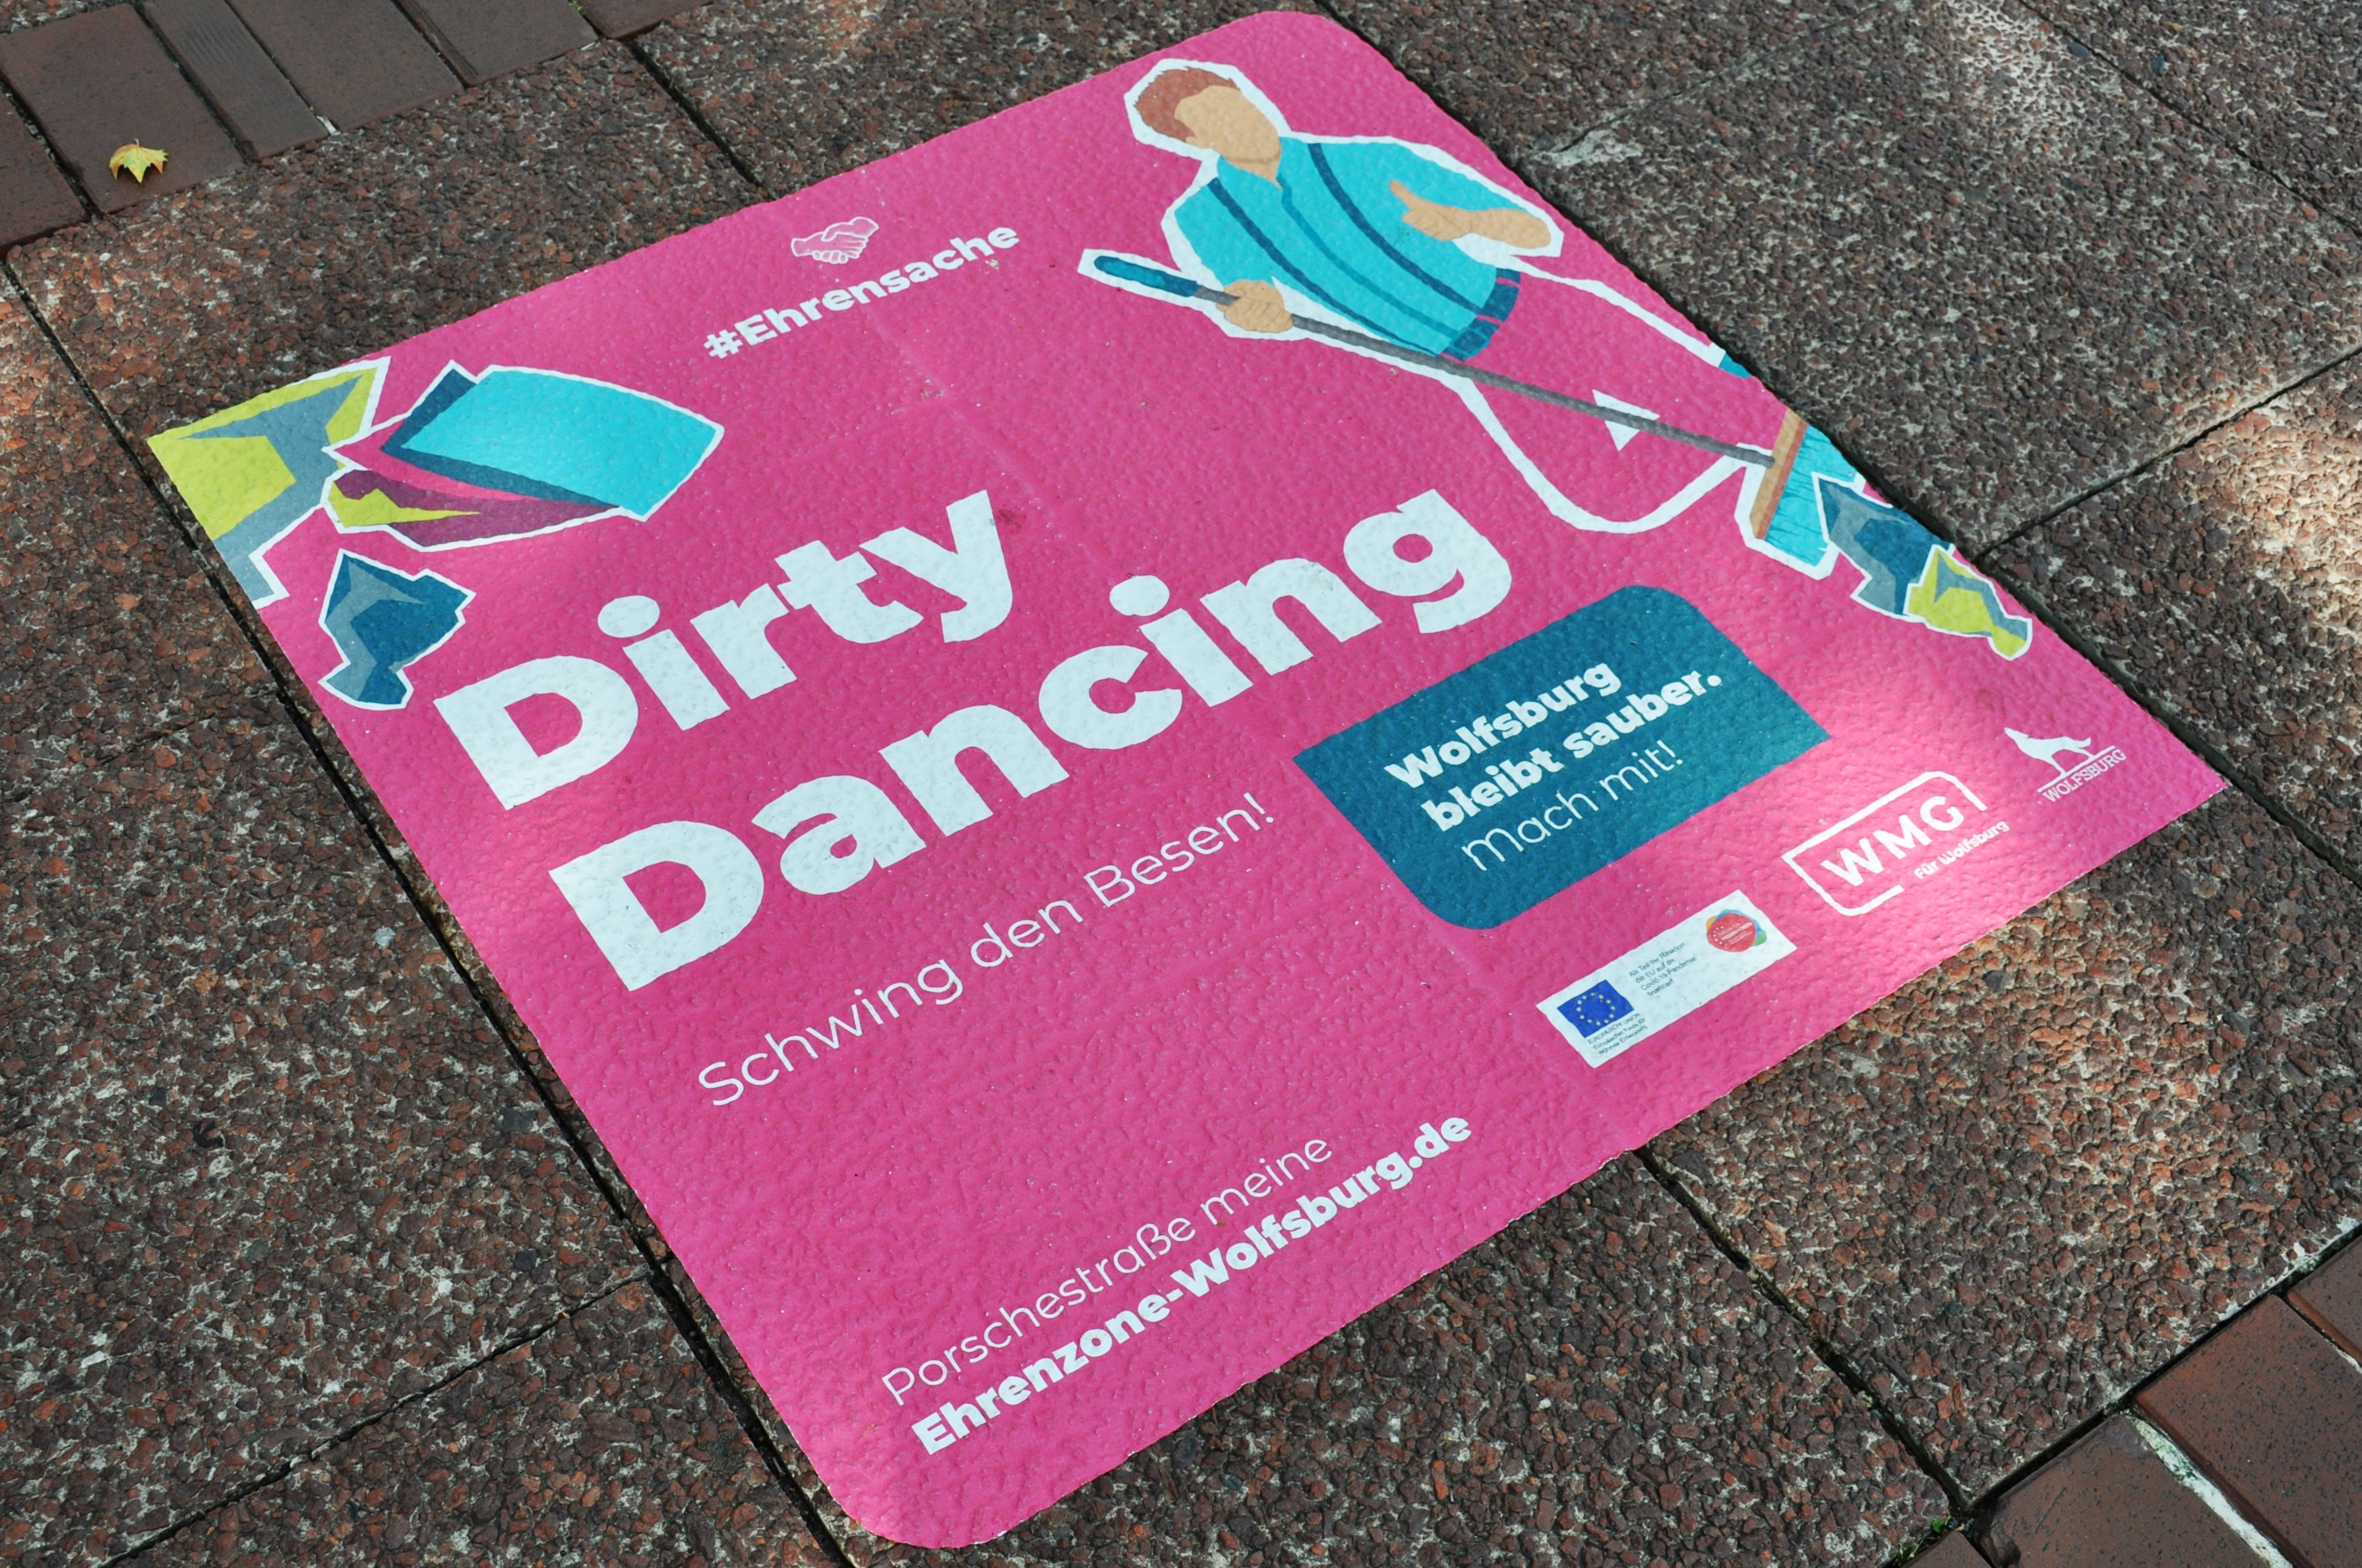 Kampagne zur Sauberkeit und Sicherheit in der Innenstadt "Ehrensache" - Aufkleber "Dirty Dancing"